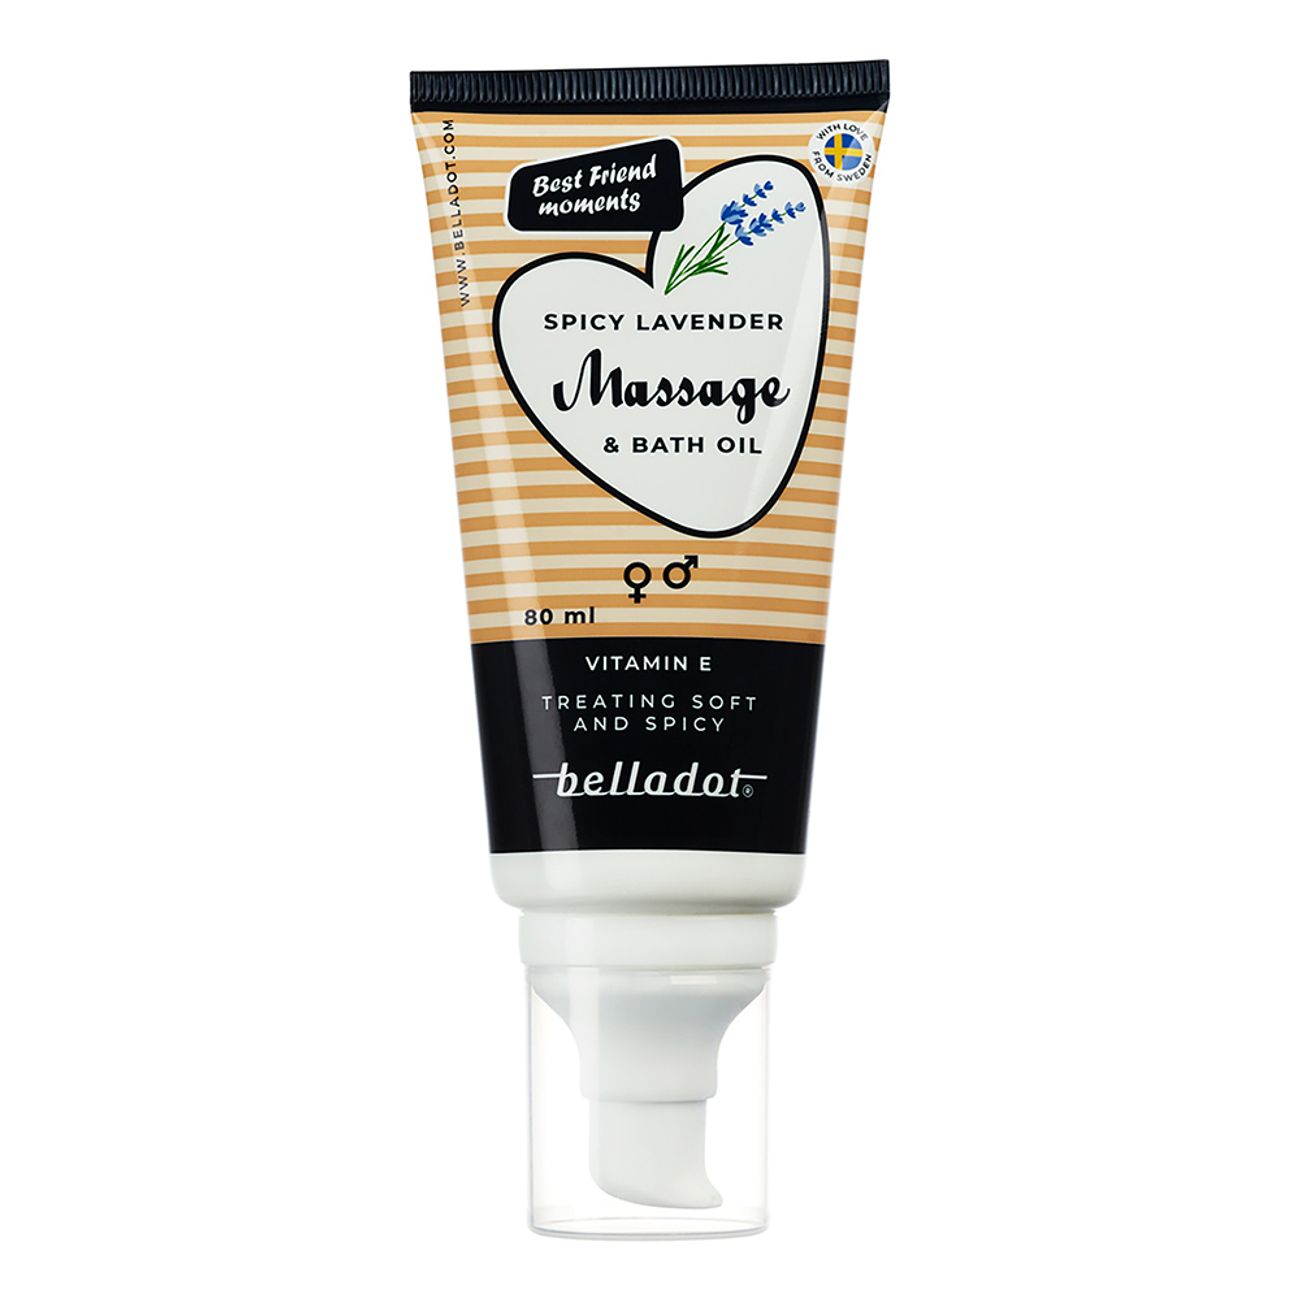 belladot-massage-bath-oil-passion-spicy-lavender-92009-2